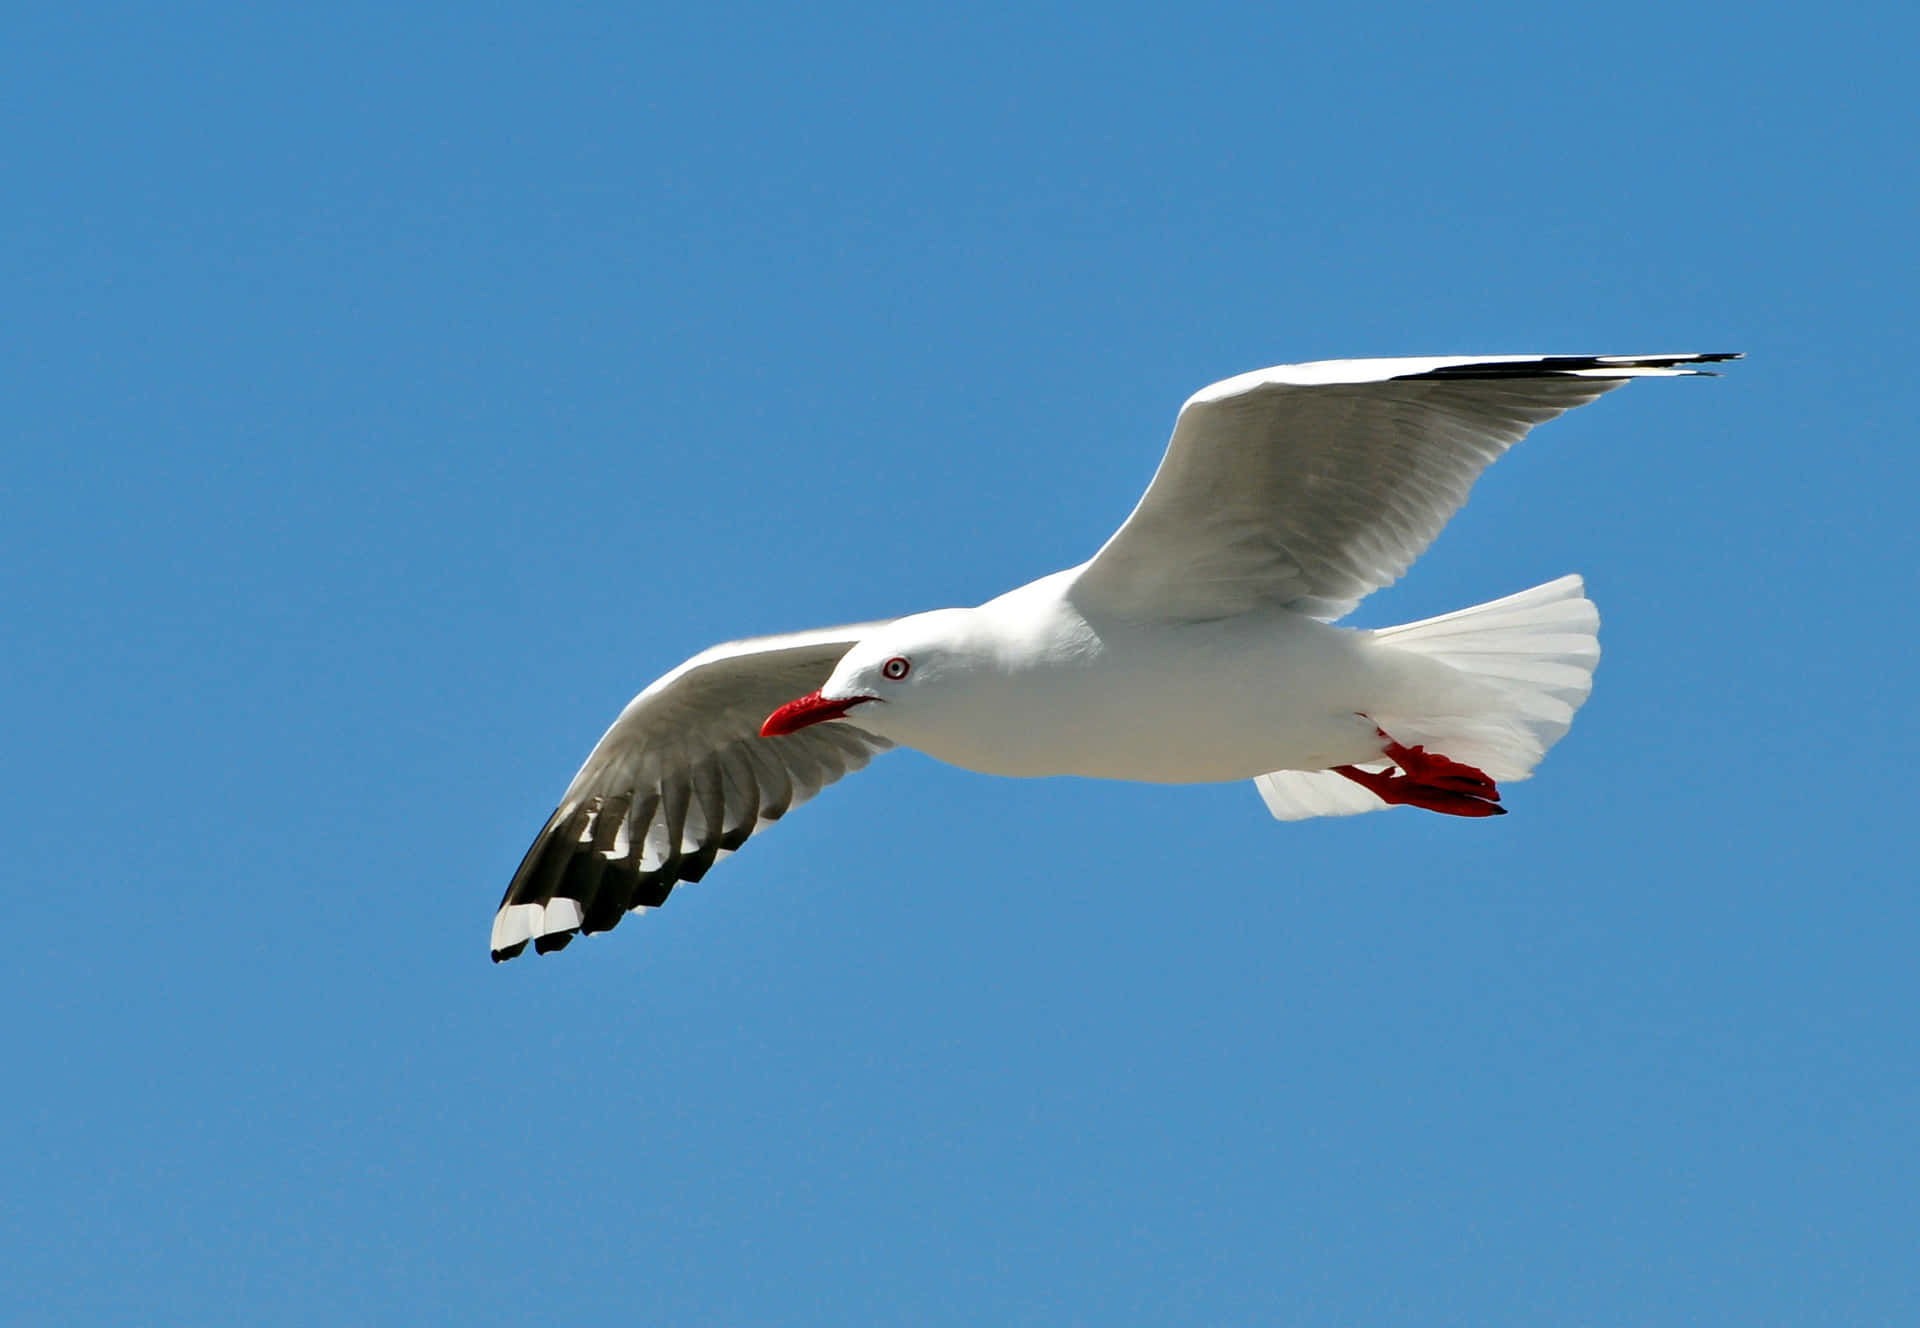 Soaring Seagull Against Blue Sky.jpg Wallpaper